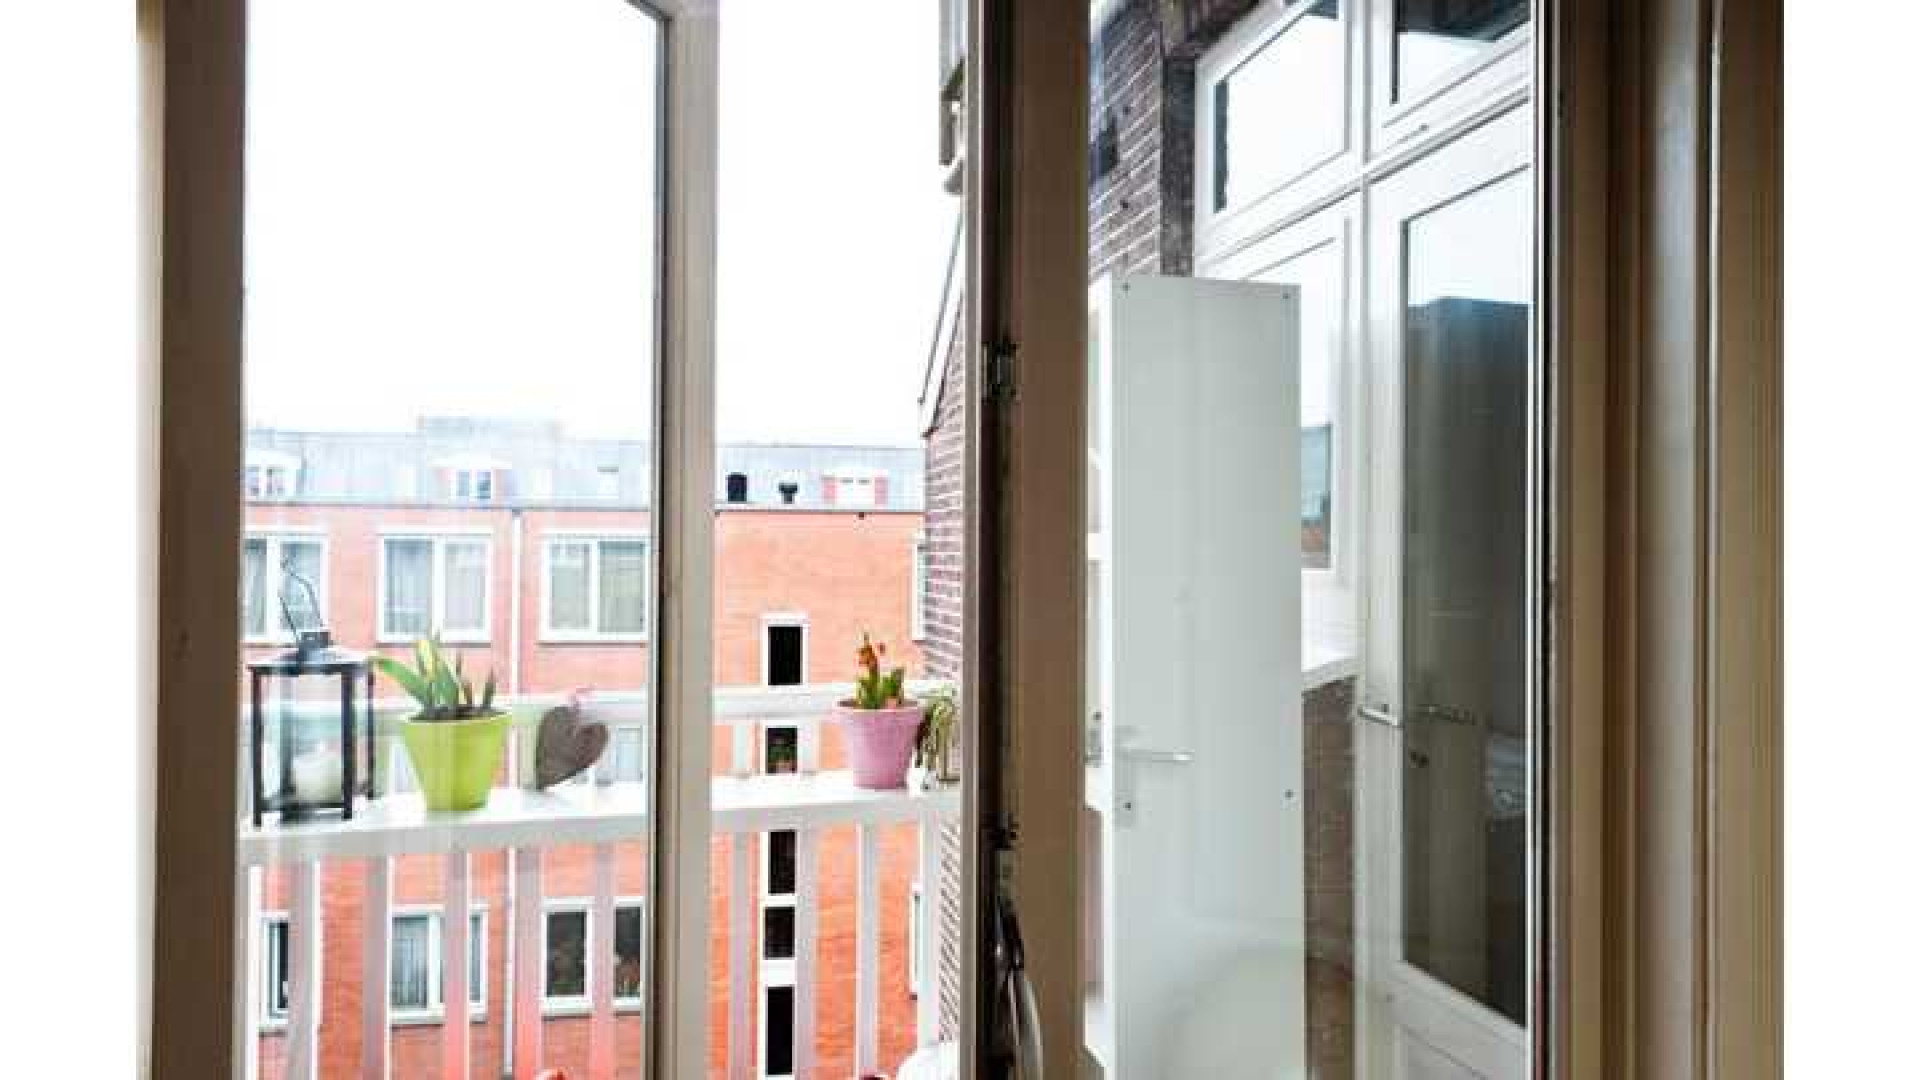 Assistent bondscoach Danny Blind koopt appartement in populaire Amsterdamse wijk. Zie foto's